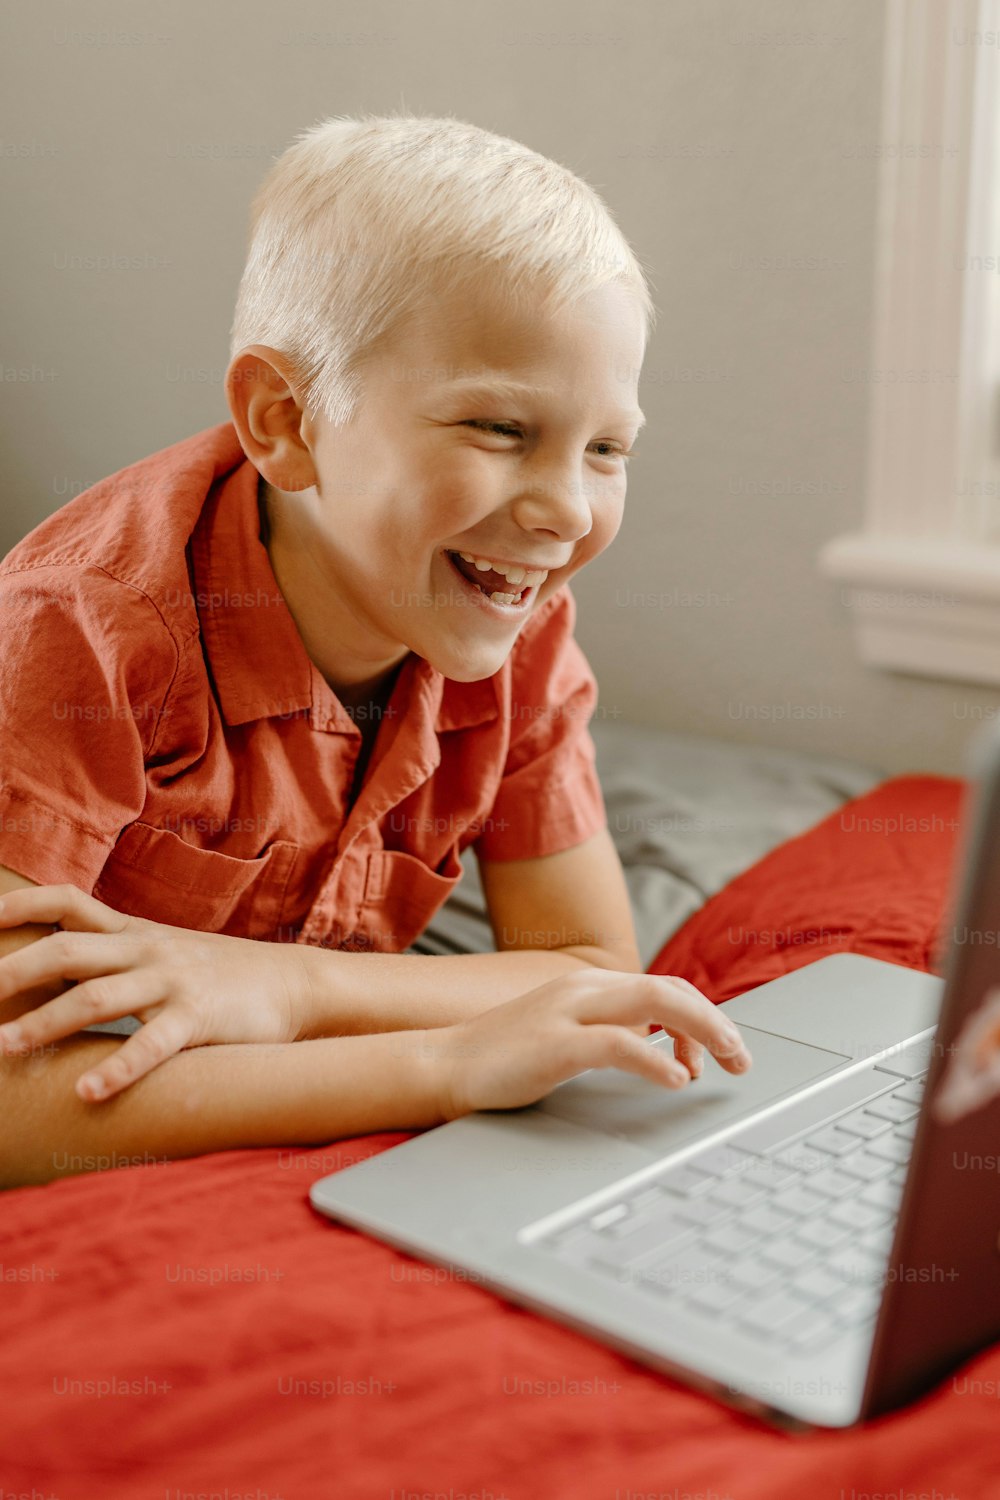 Un niño sonríe mientras mira una computadora portátil